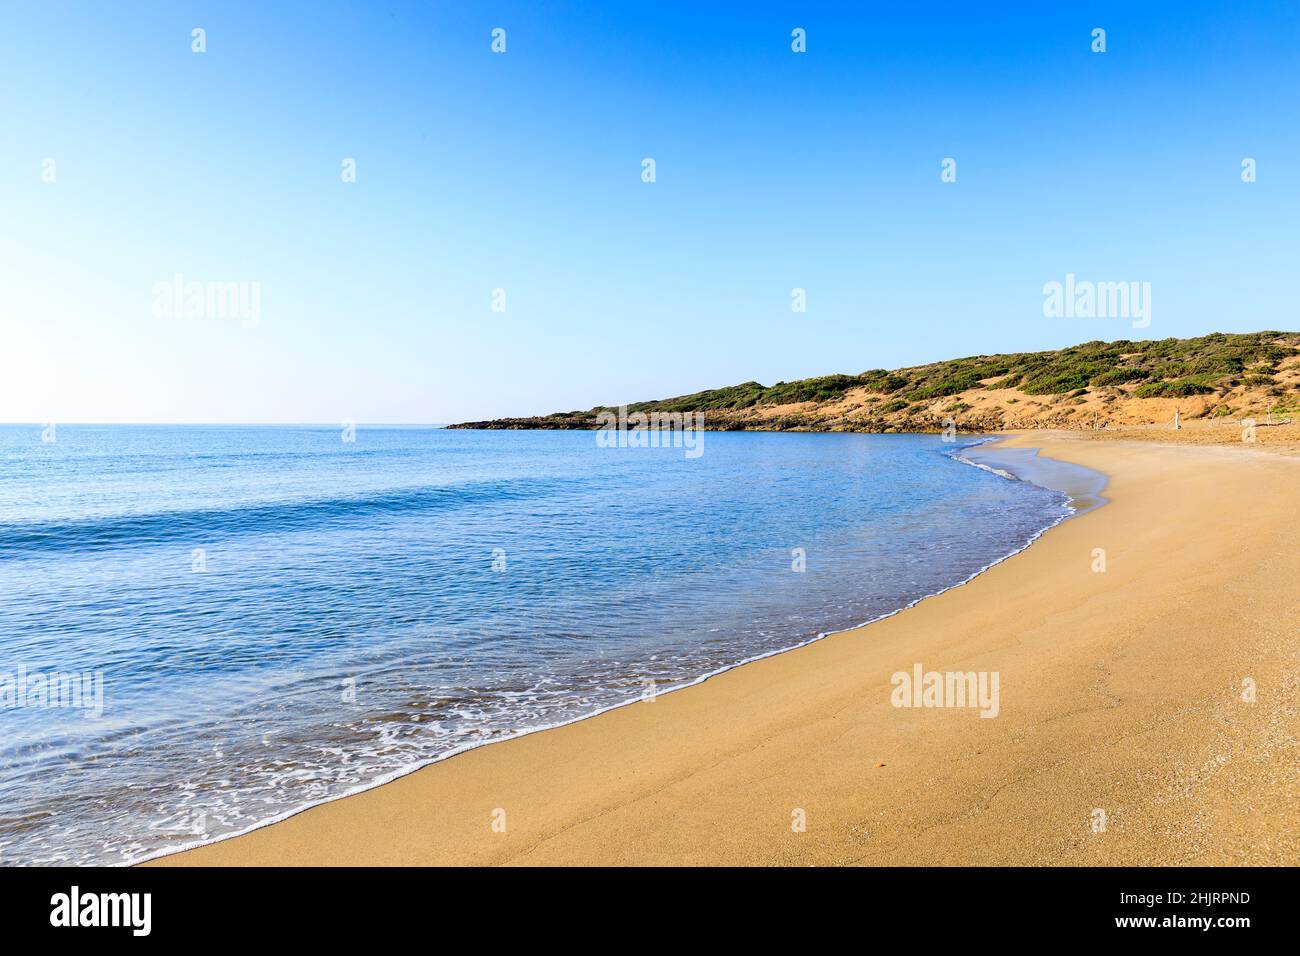 Marianelli Beach near Noto, Sicily, Italy Stock Photo